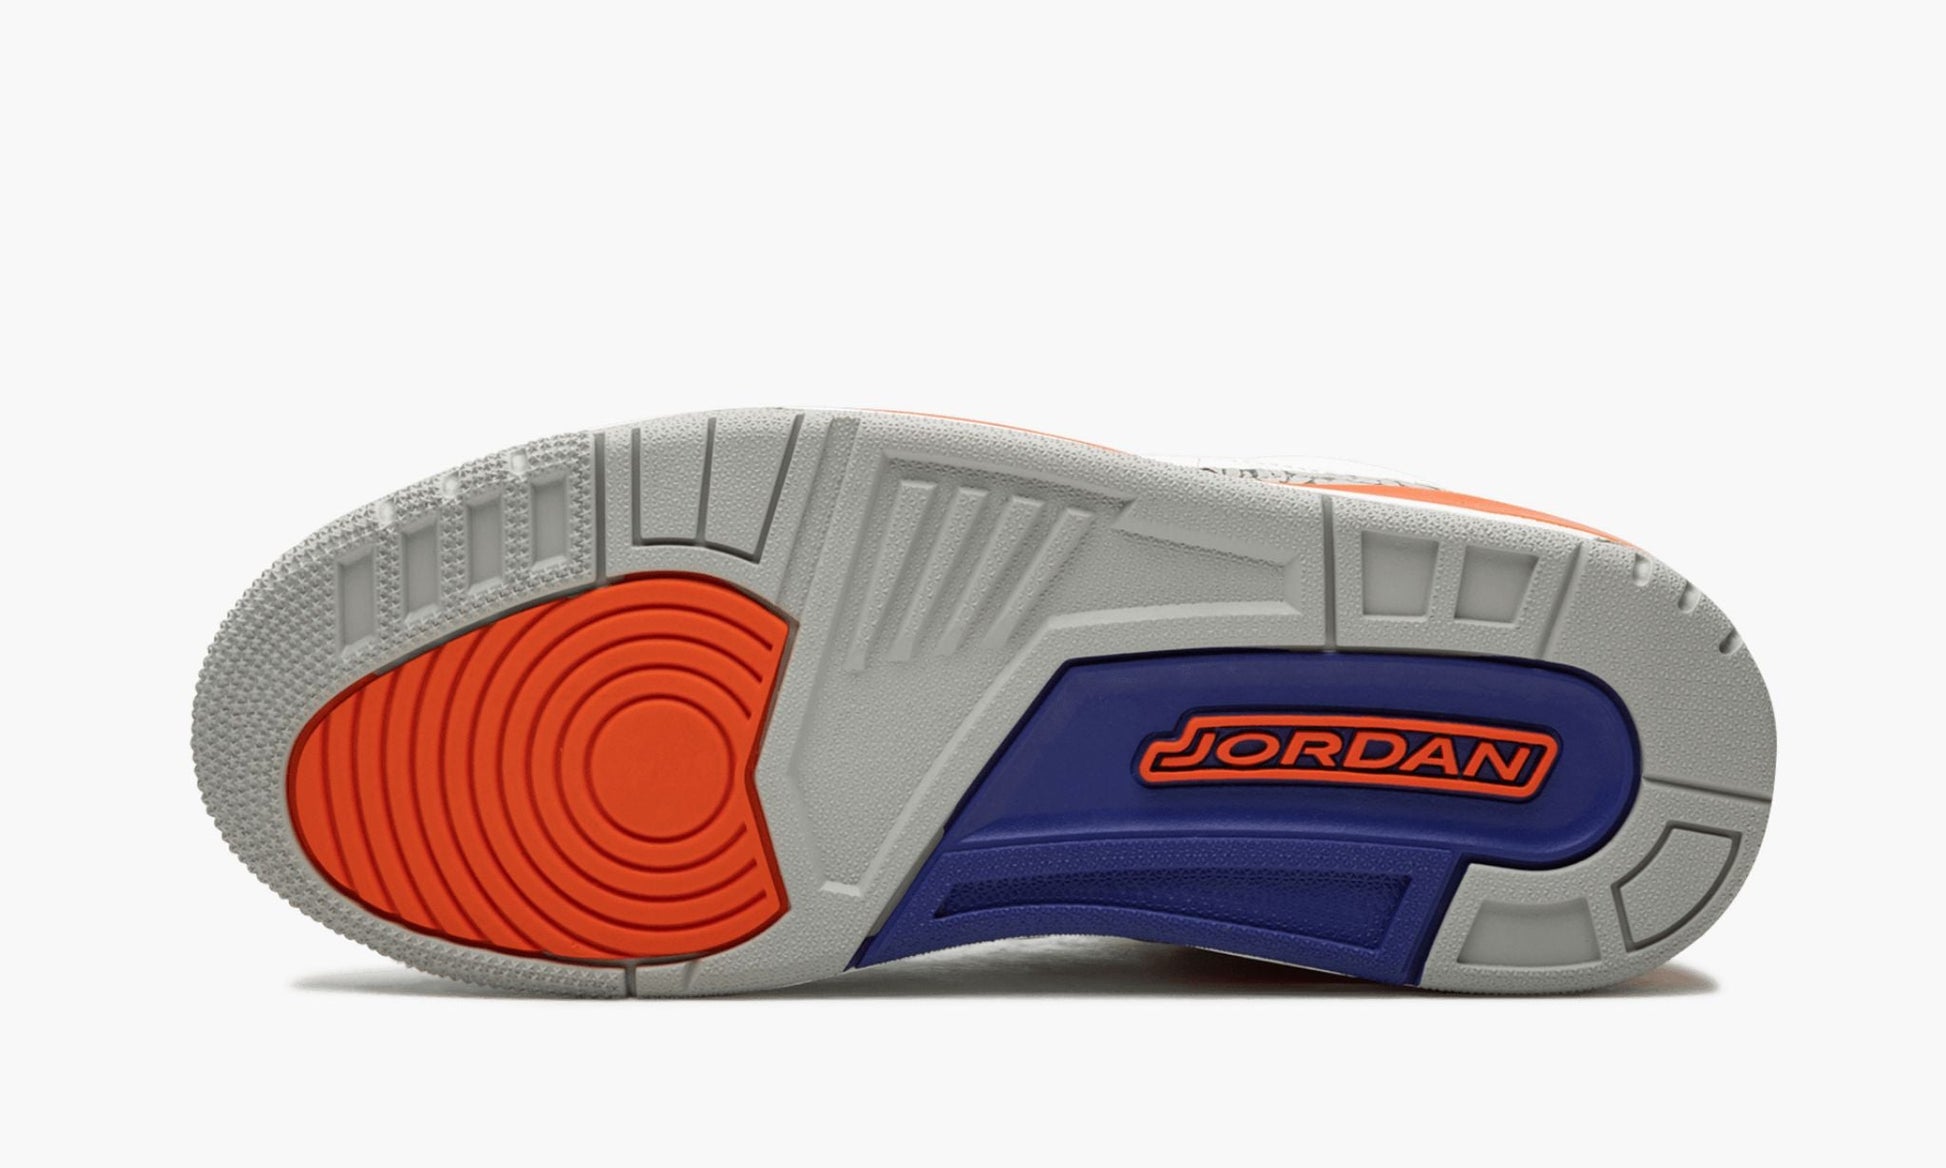 Air Jordan 3 Retro "Knicks"